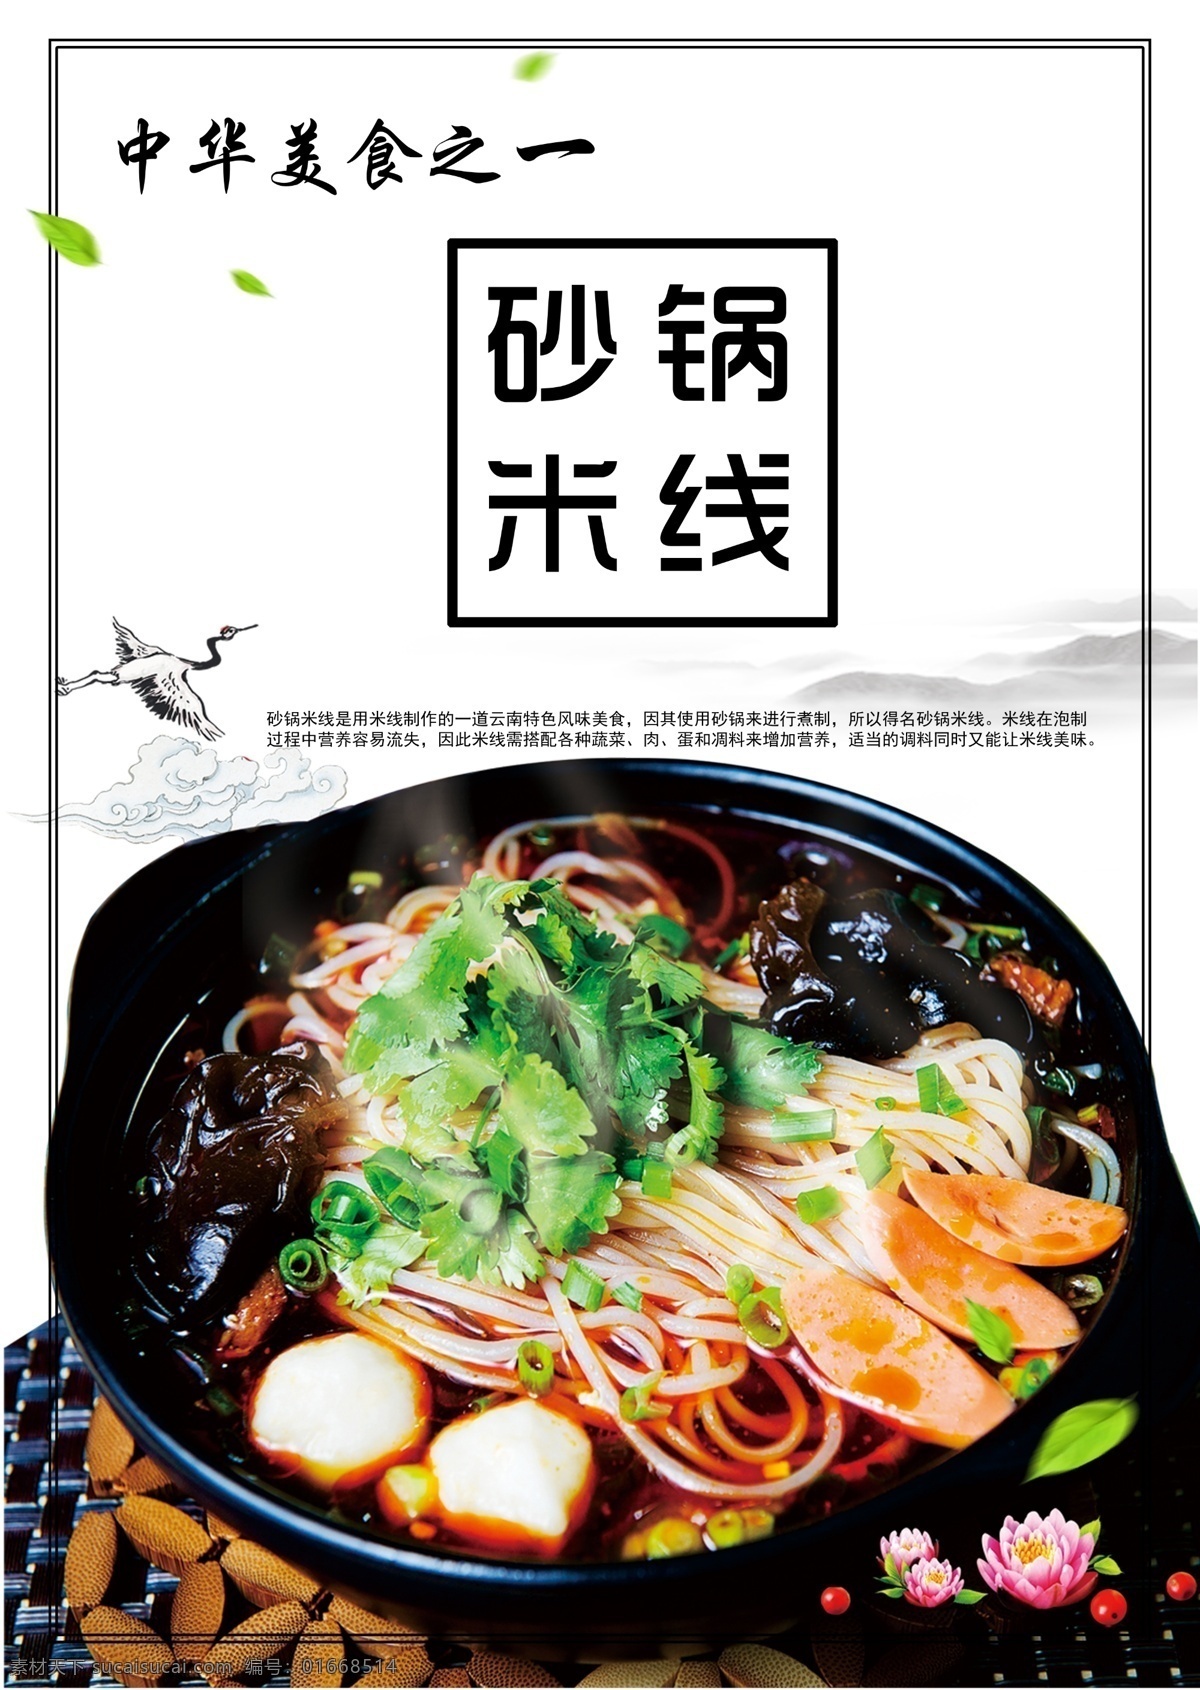 砂锅米线海报 米线海报 传统美食 中华美食 砂锅米线 米线 美食 食物 食品 美食海报 分层